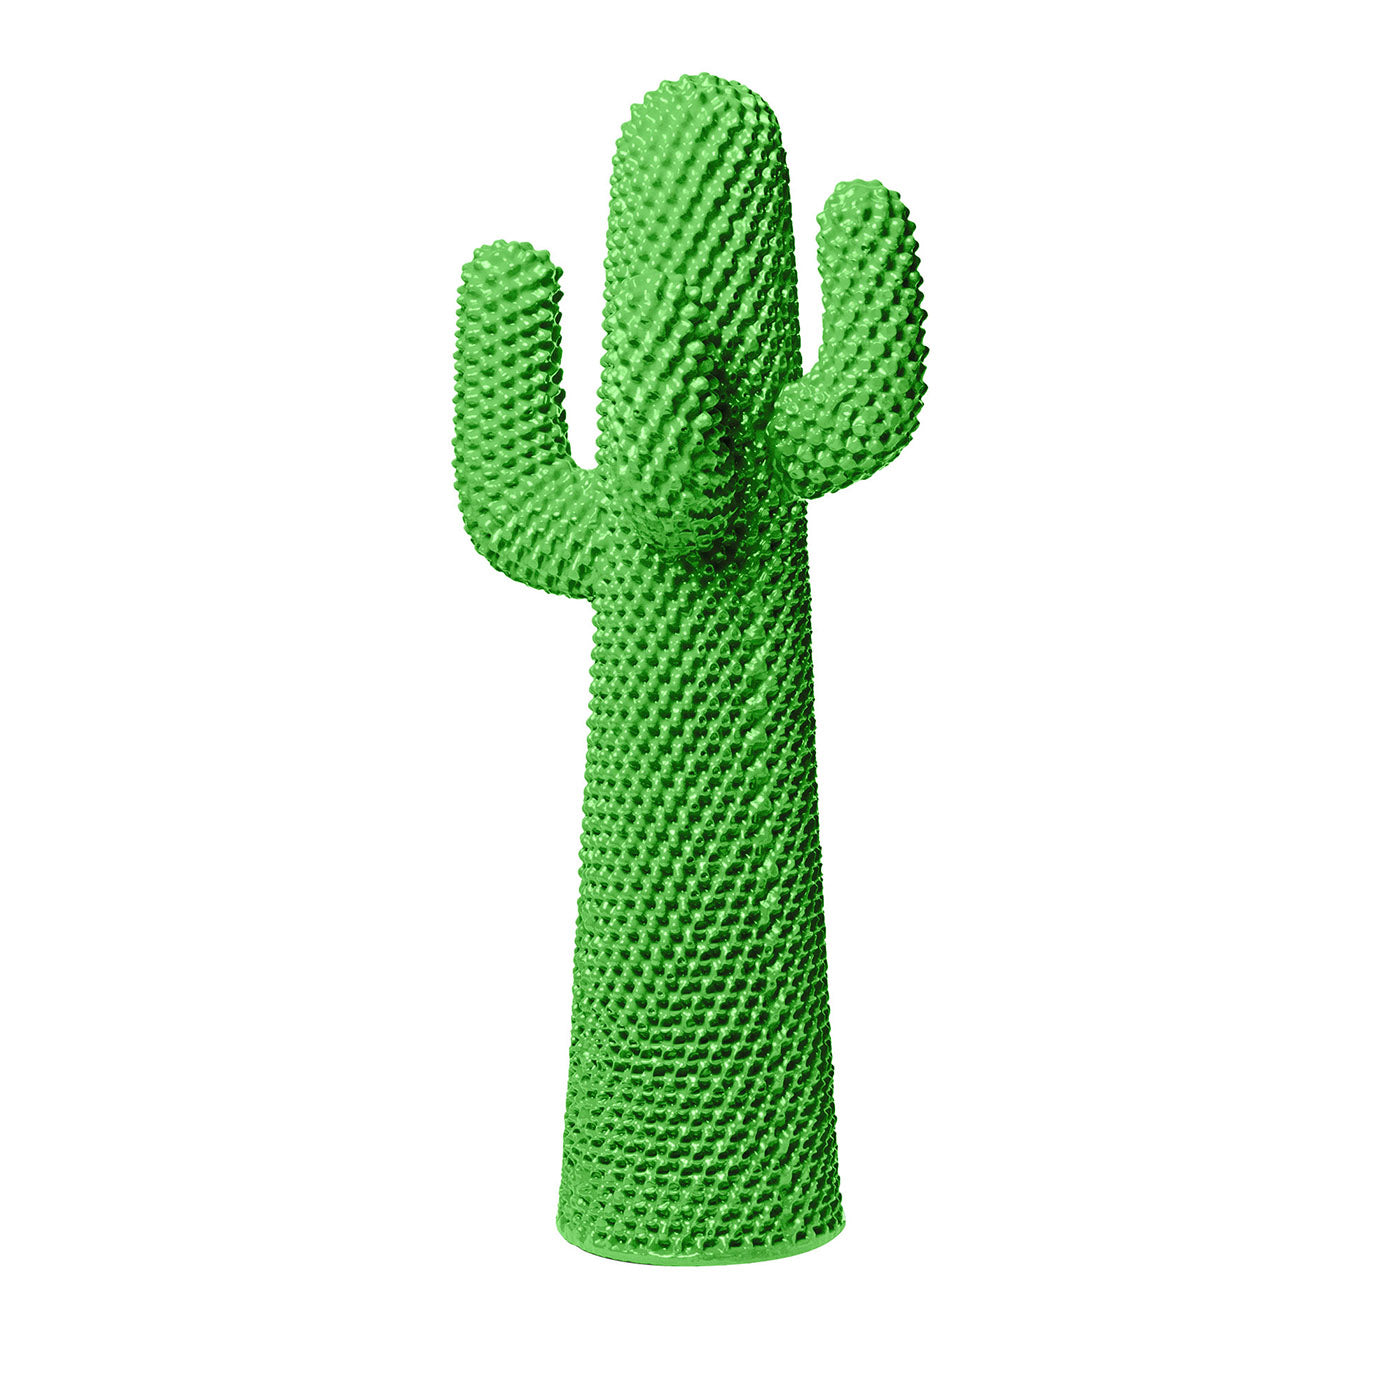 Autre porte-manteau en cactus vert par Drocco/Mello